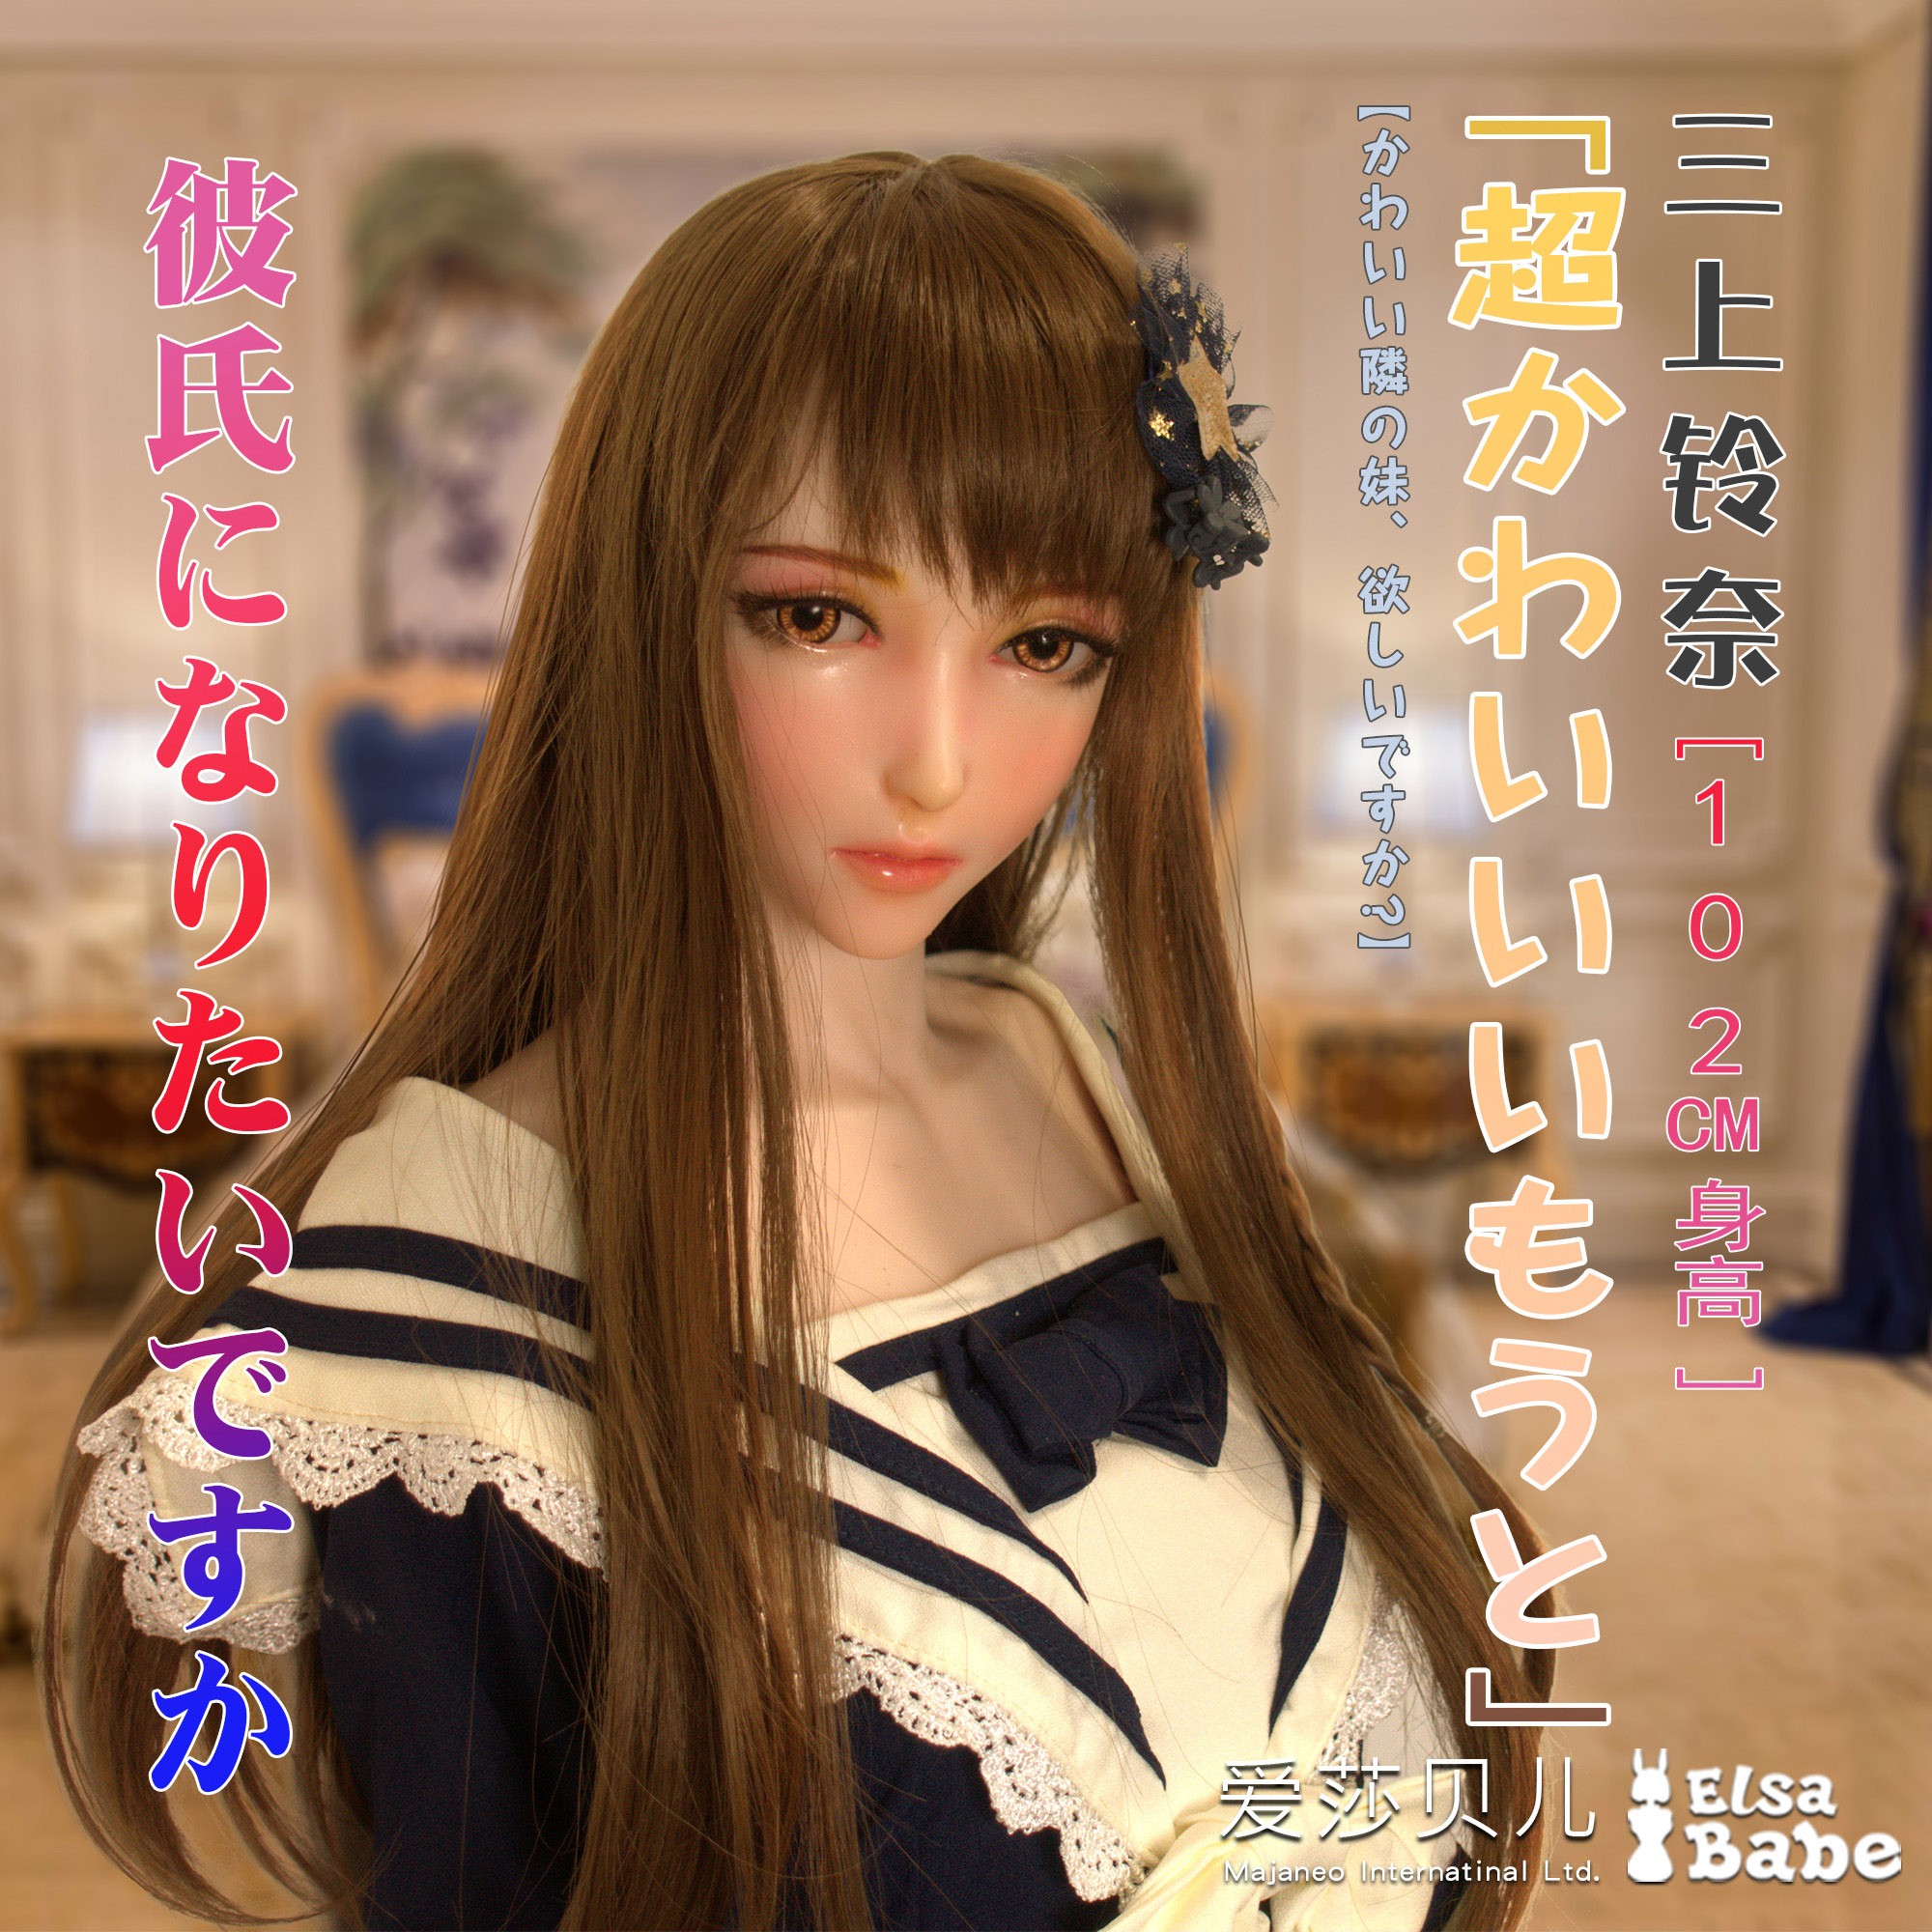 ElsaBabe Head of 102cm Platinum Silicone Sex Doll, Mikami Rena